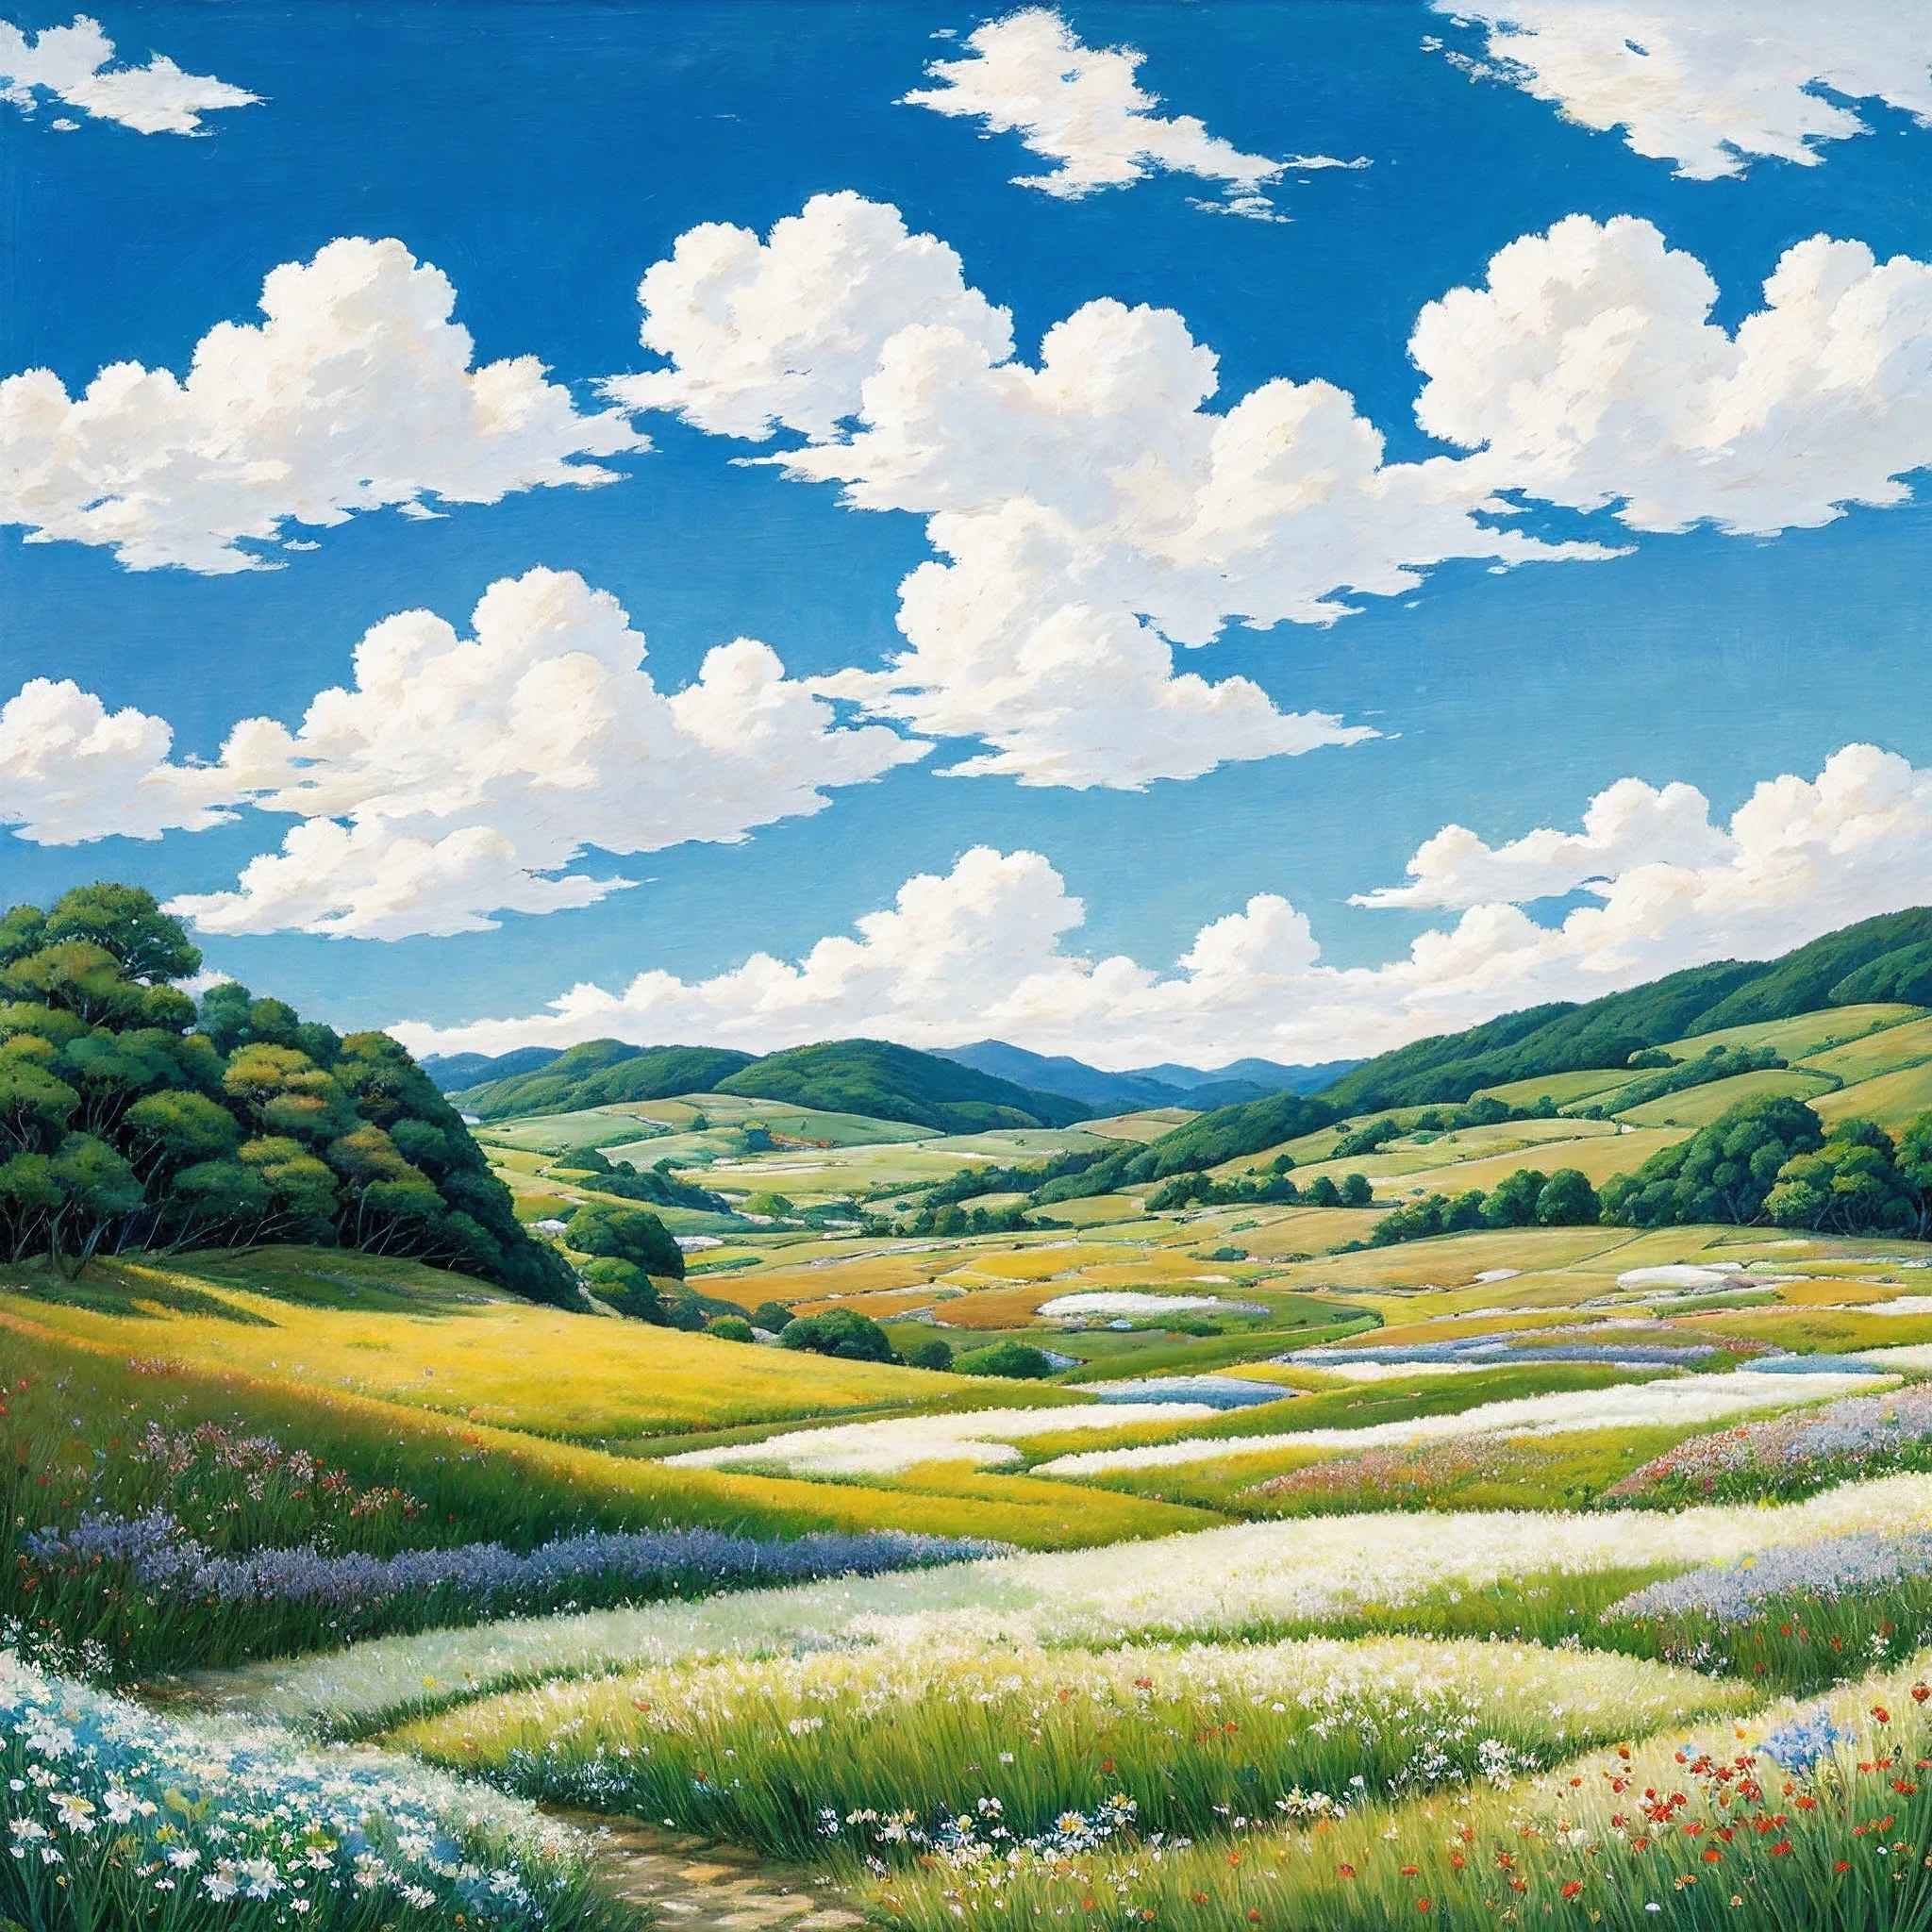 Realista, auténtico, hermoso y sorprendente paisaje pintura al óleo Studio Ghibli Hayao Miyazaki&#39;Pastizales de pétalos con cielo azul y nubes blancas.